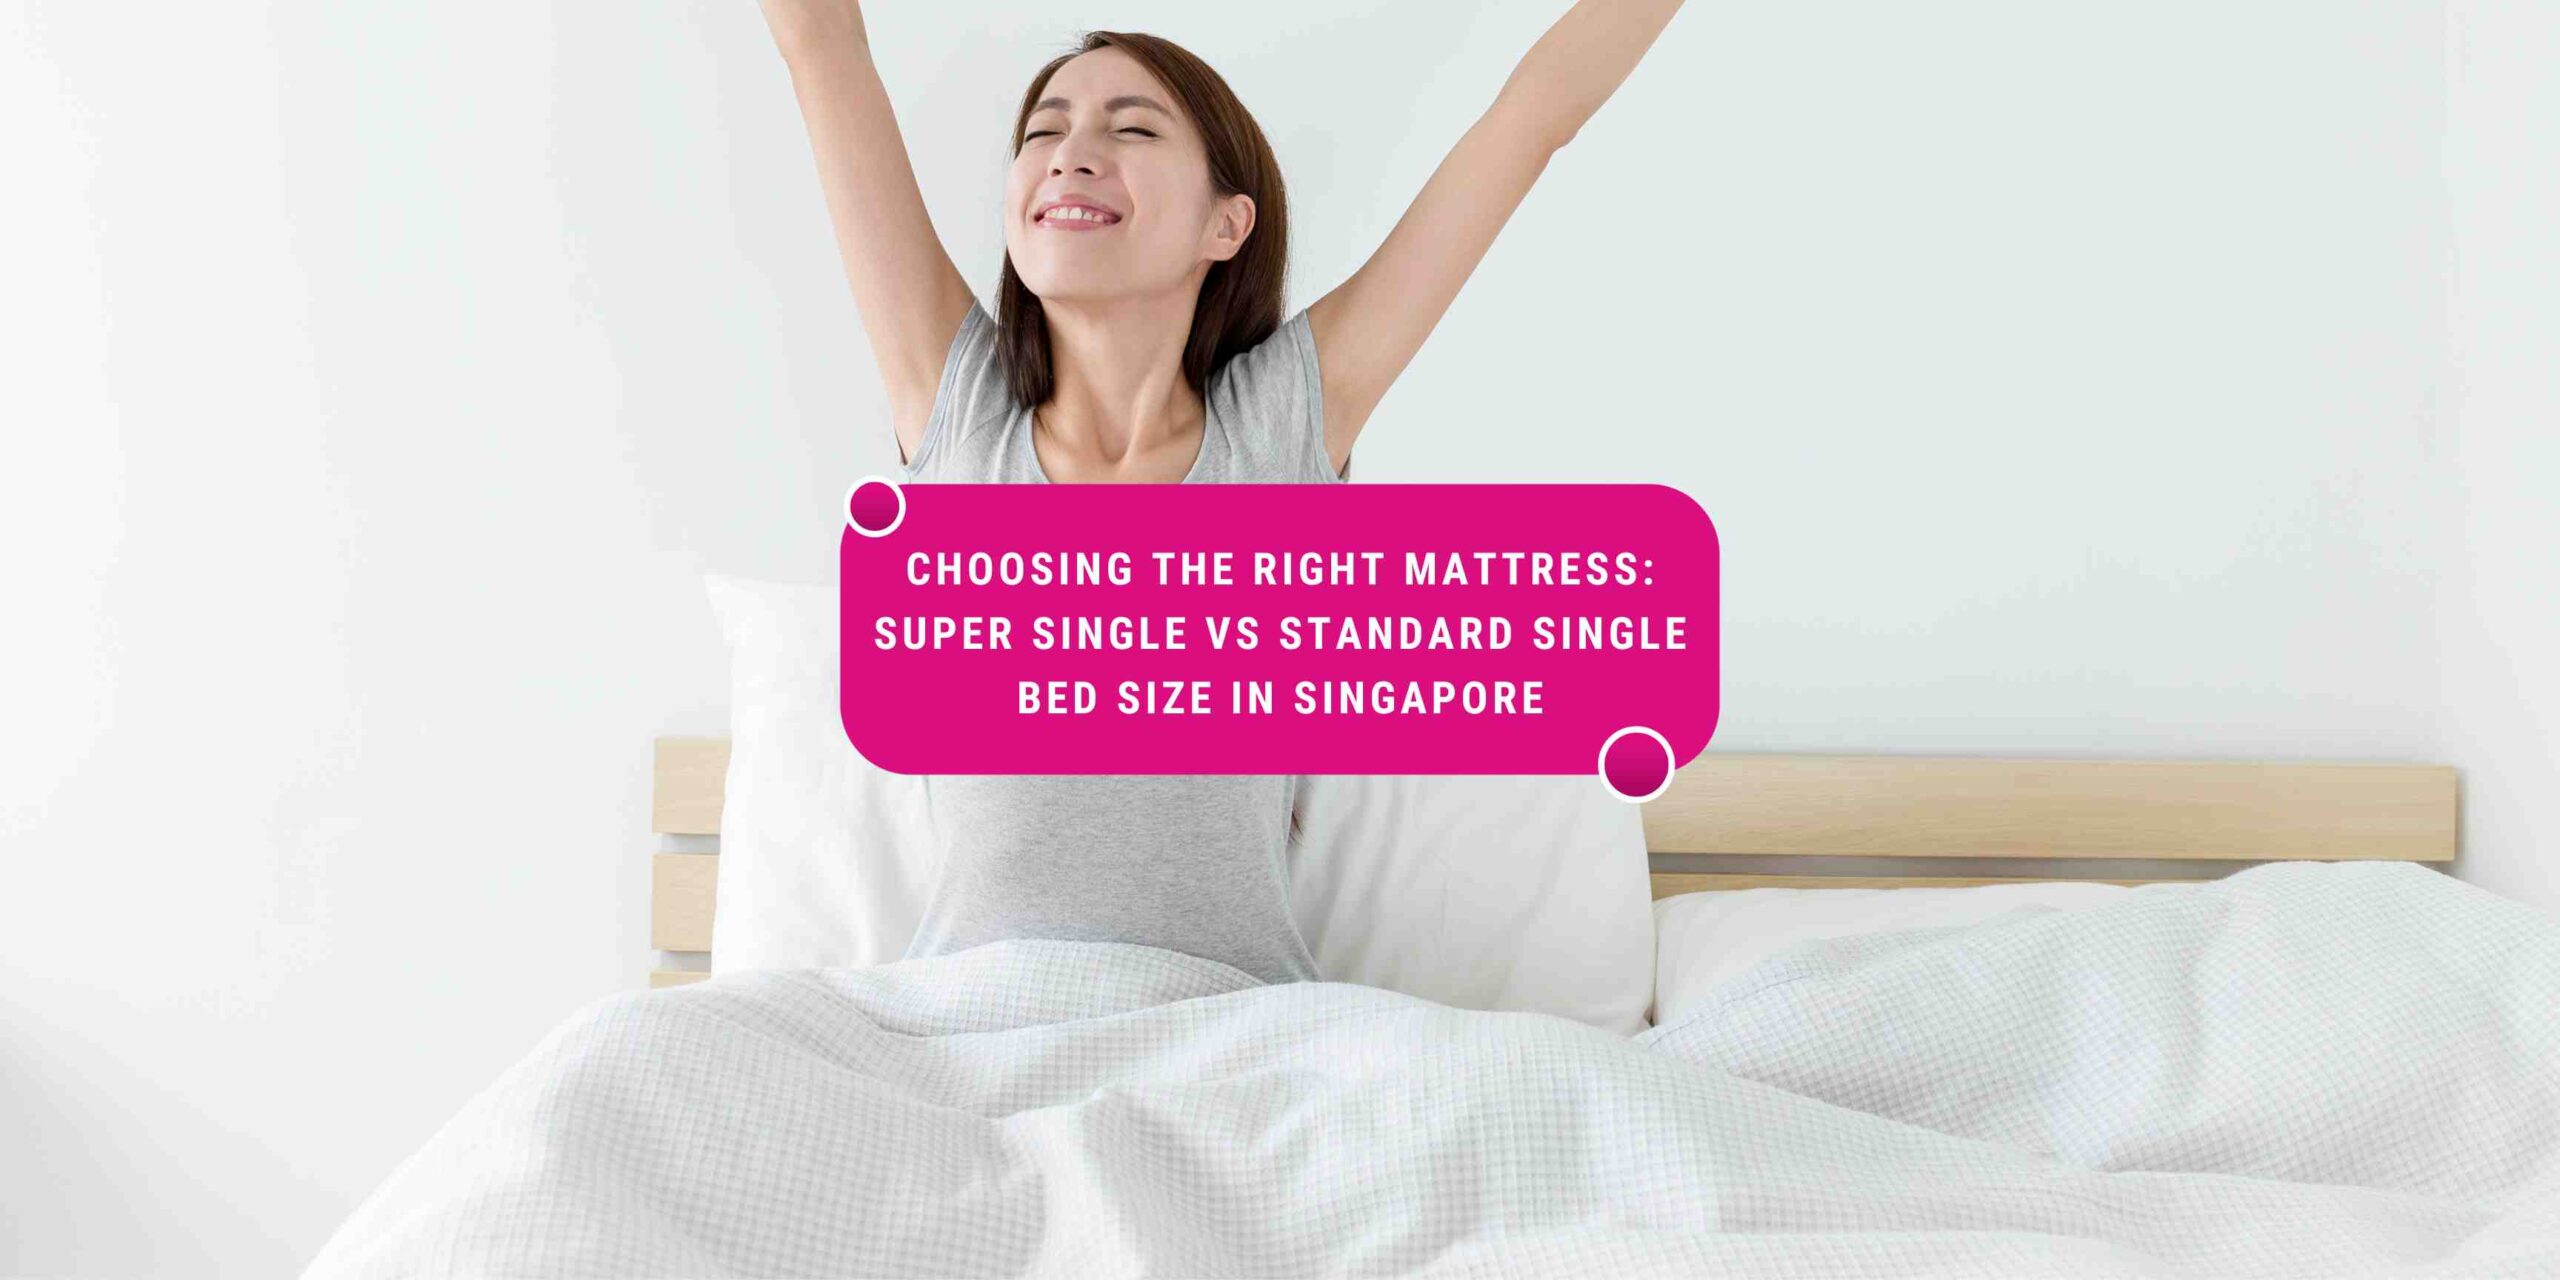 super single mattress size singapore, standard single bed size, single vs super single